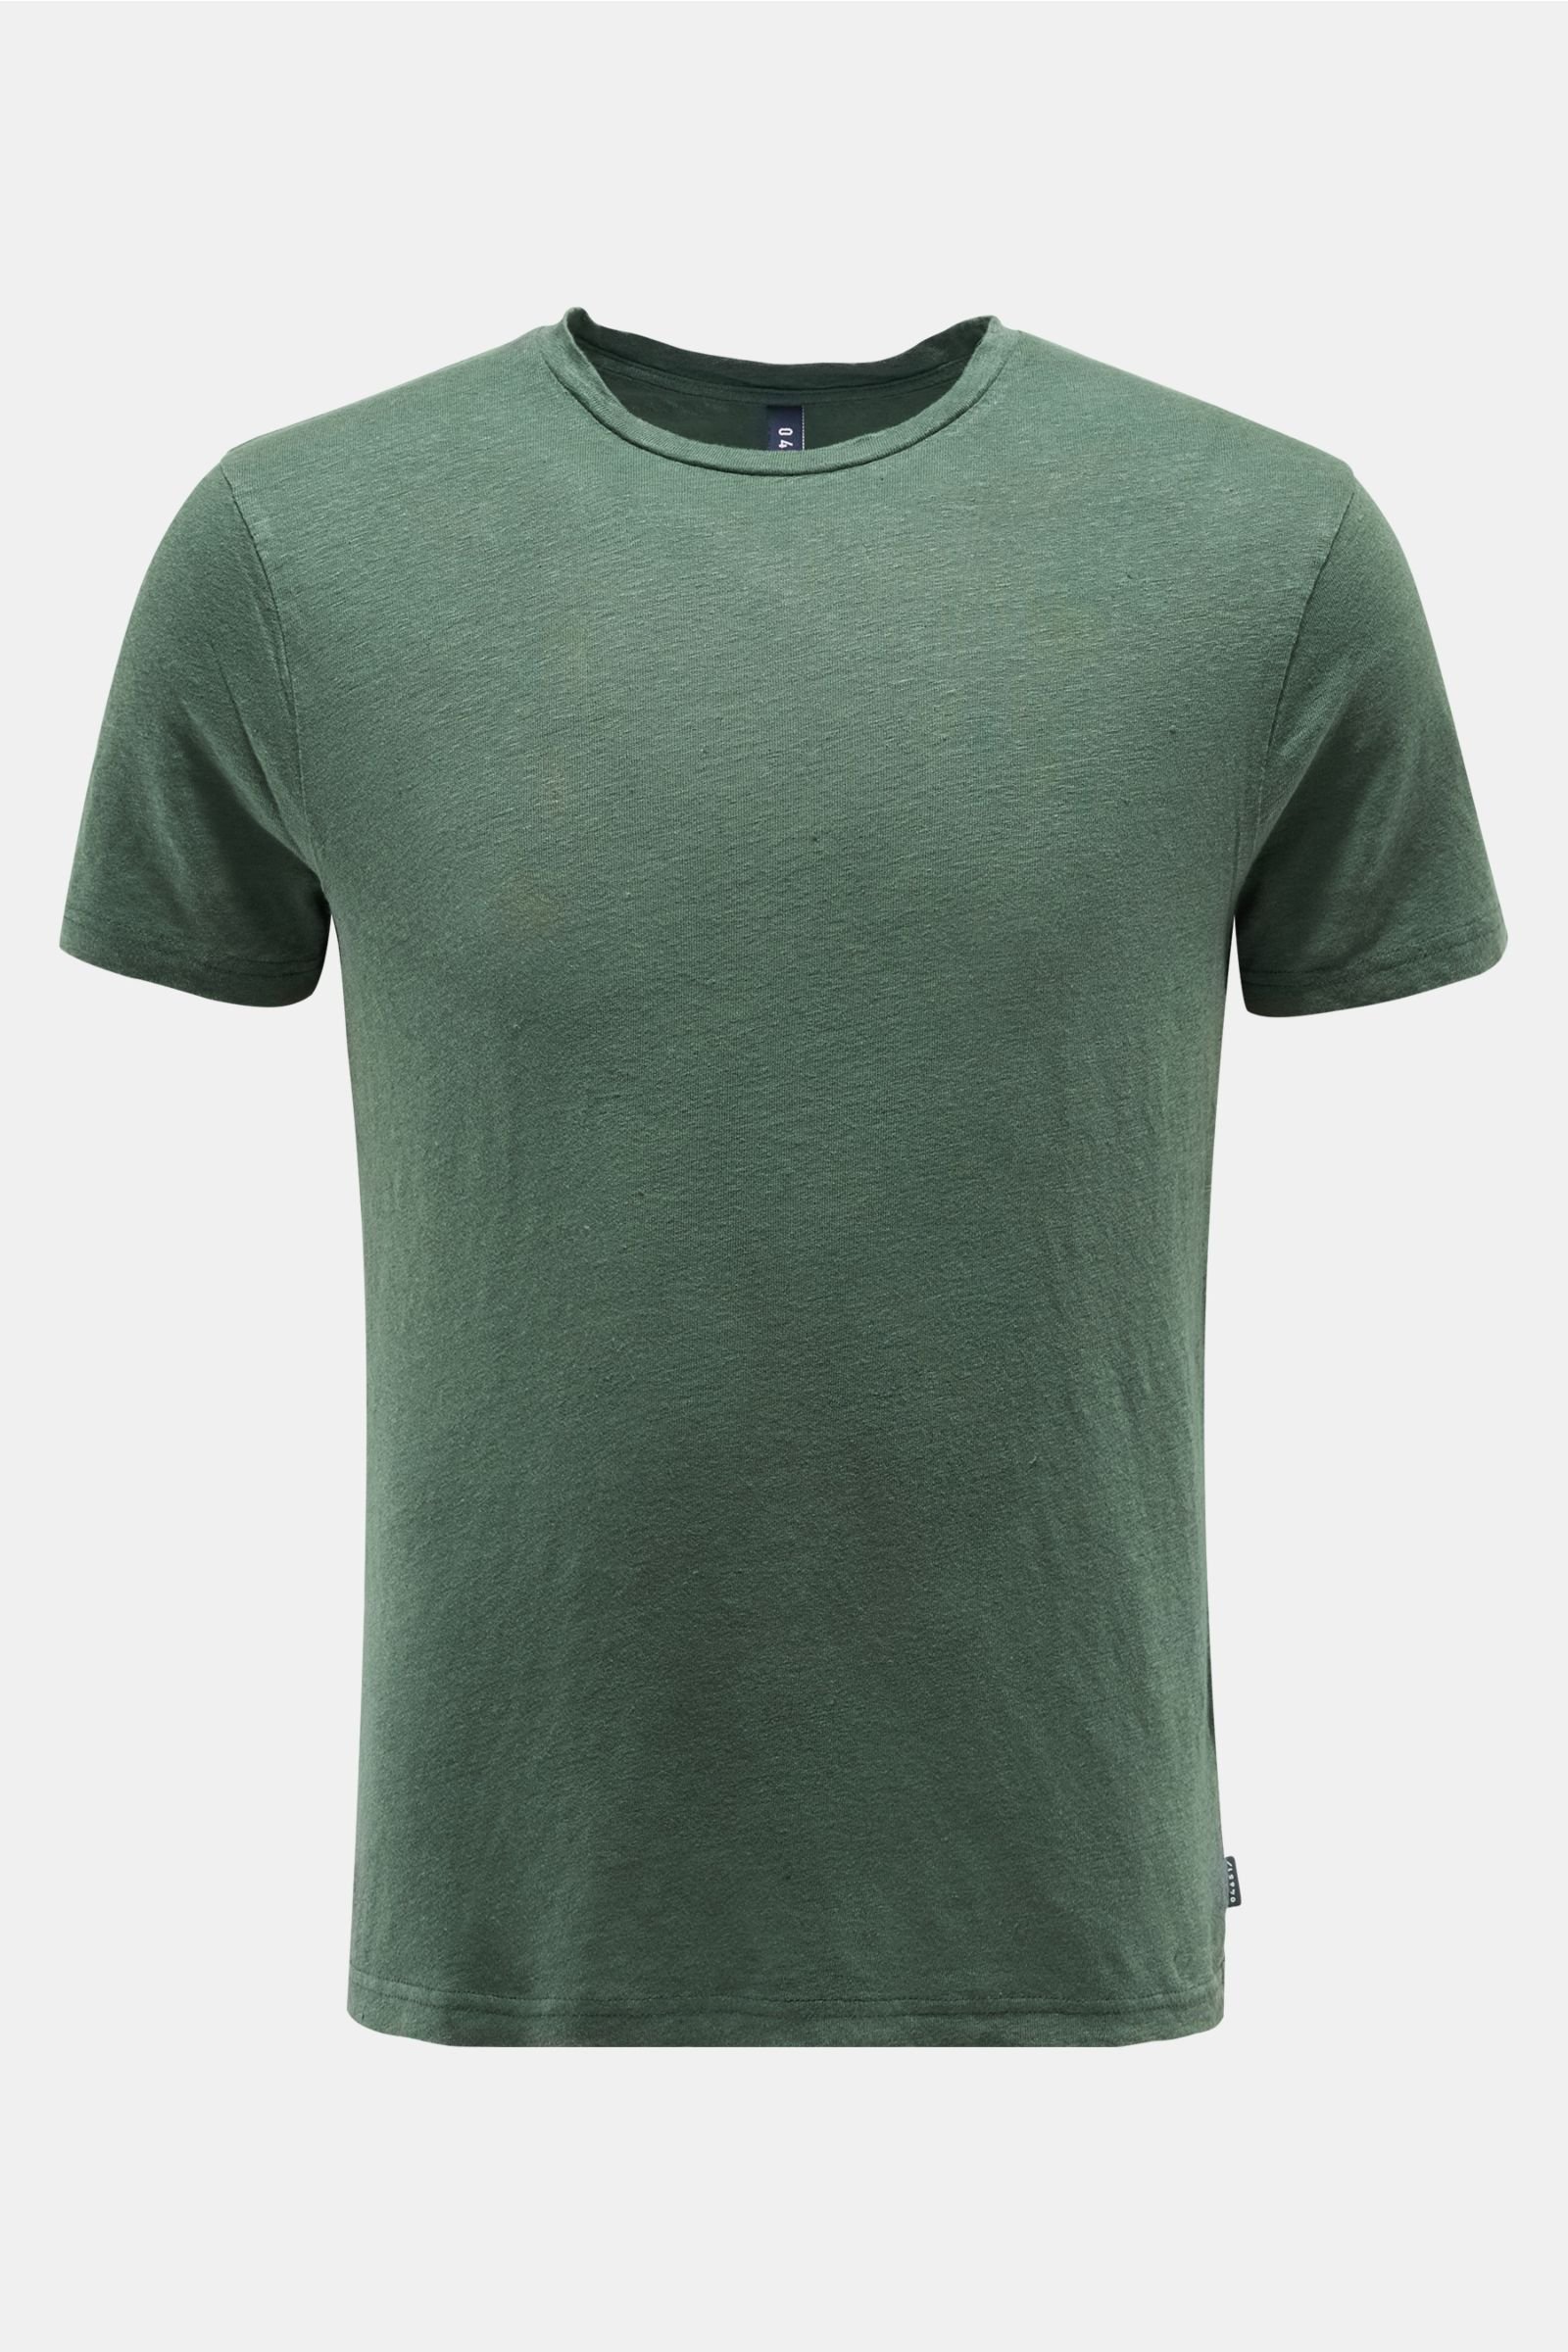 Linen crew neck T-shirt dark green